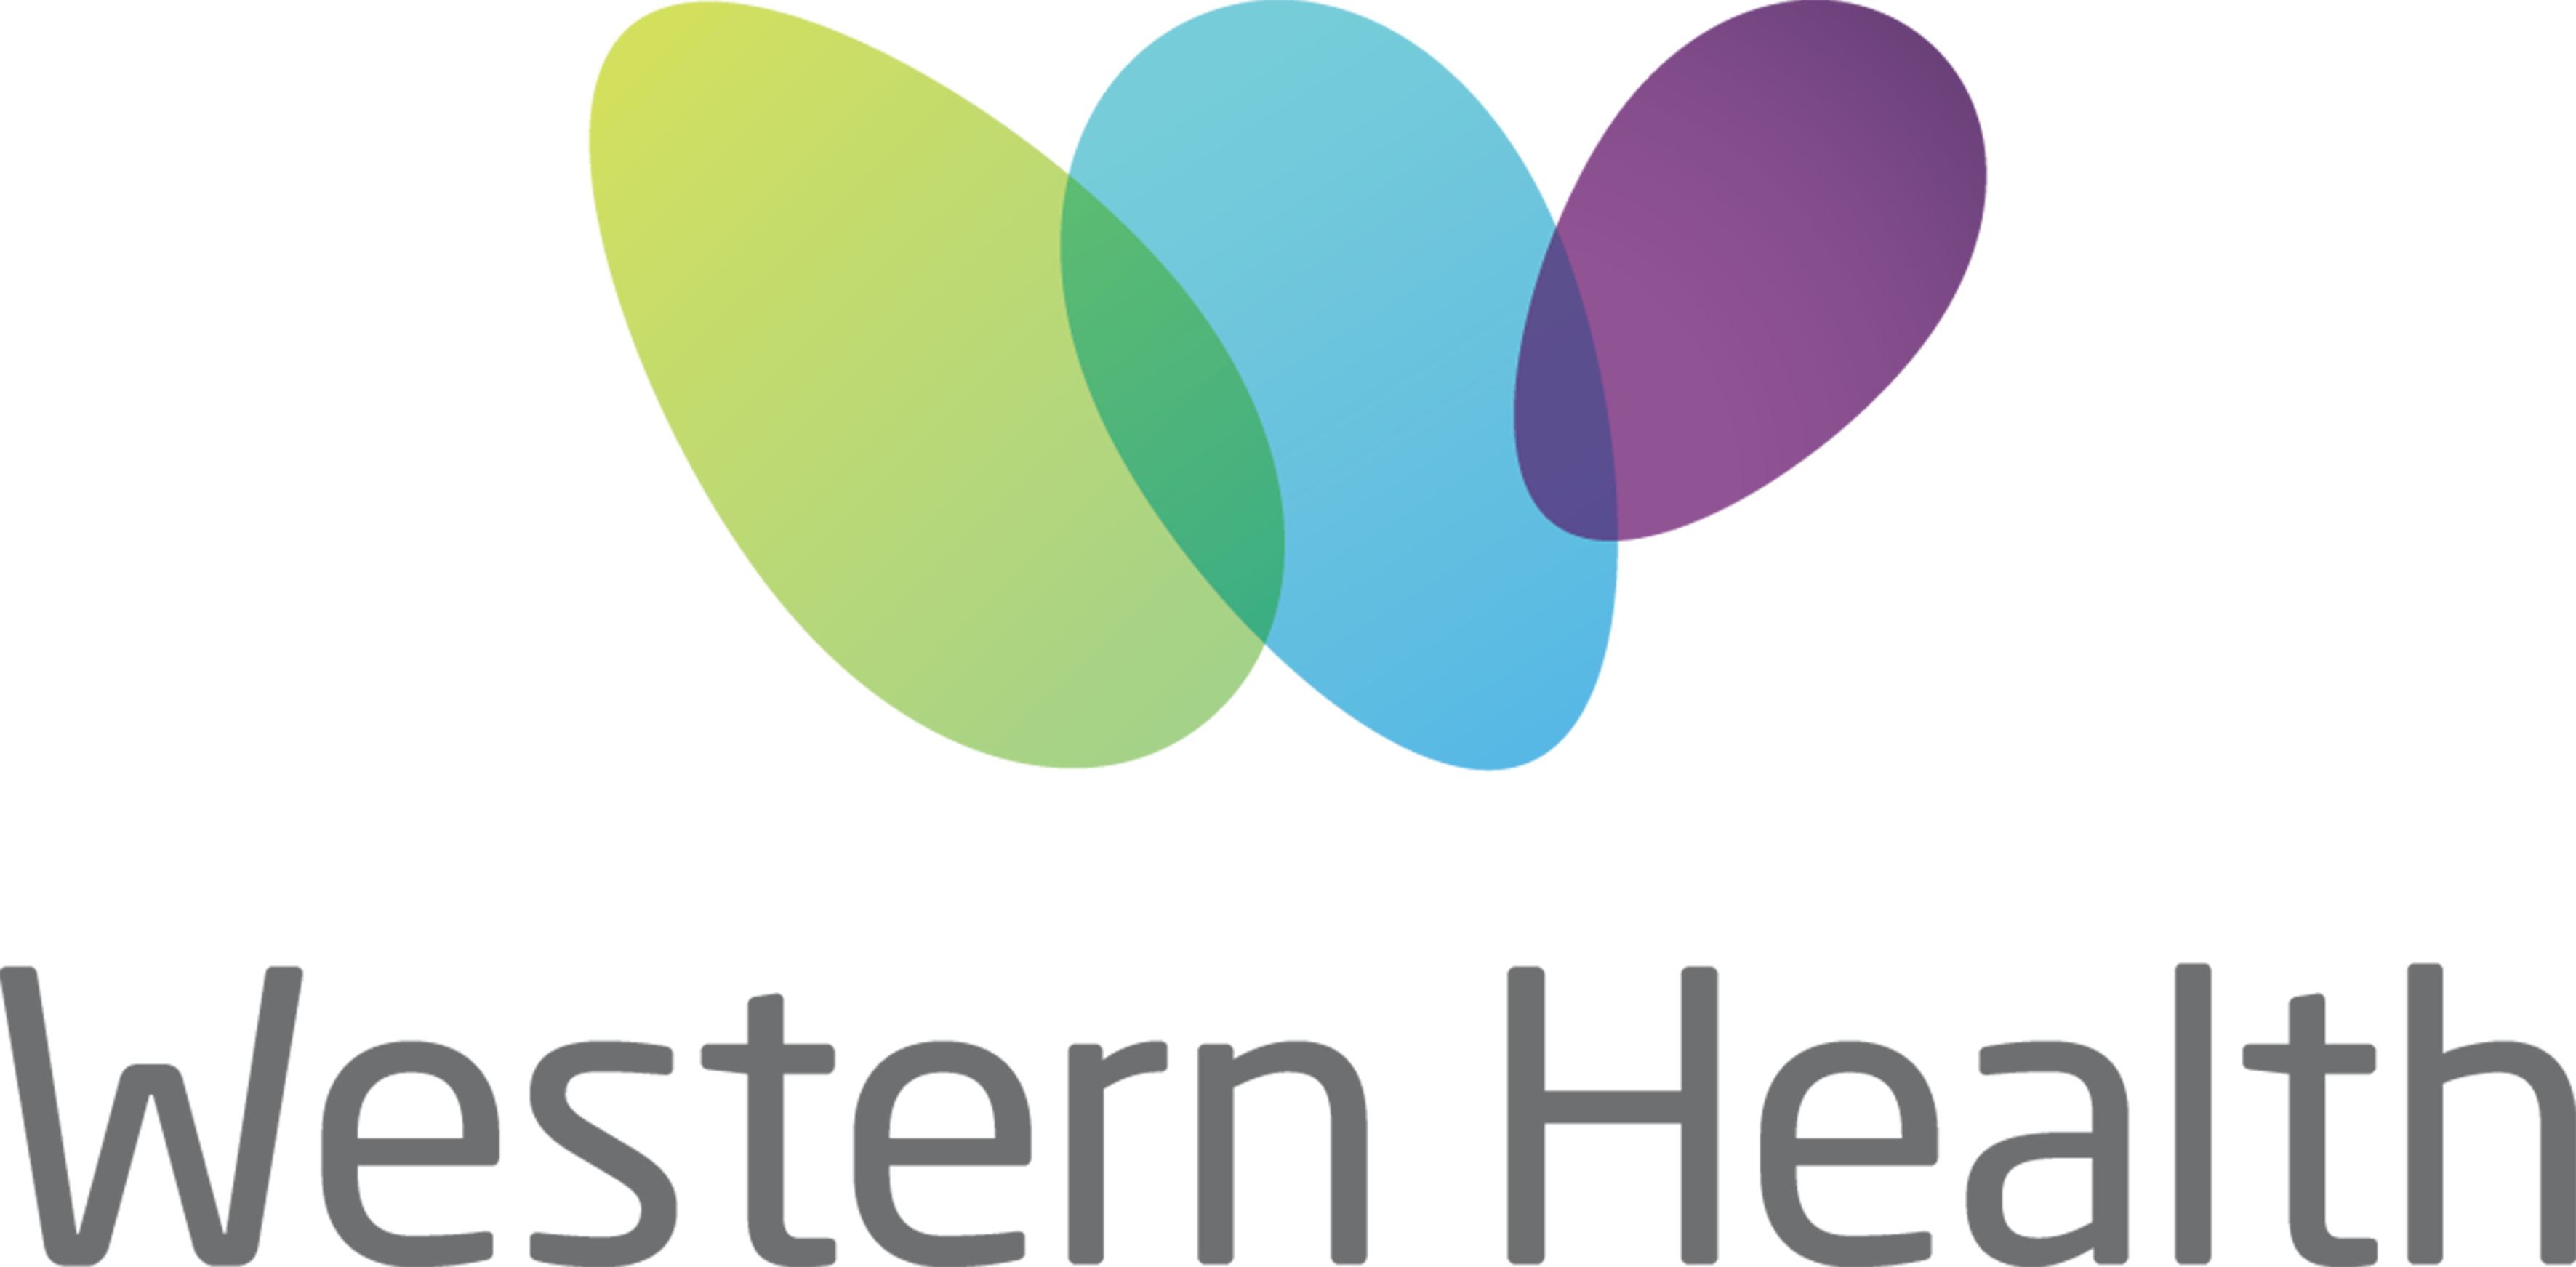 Western Health Logo